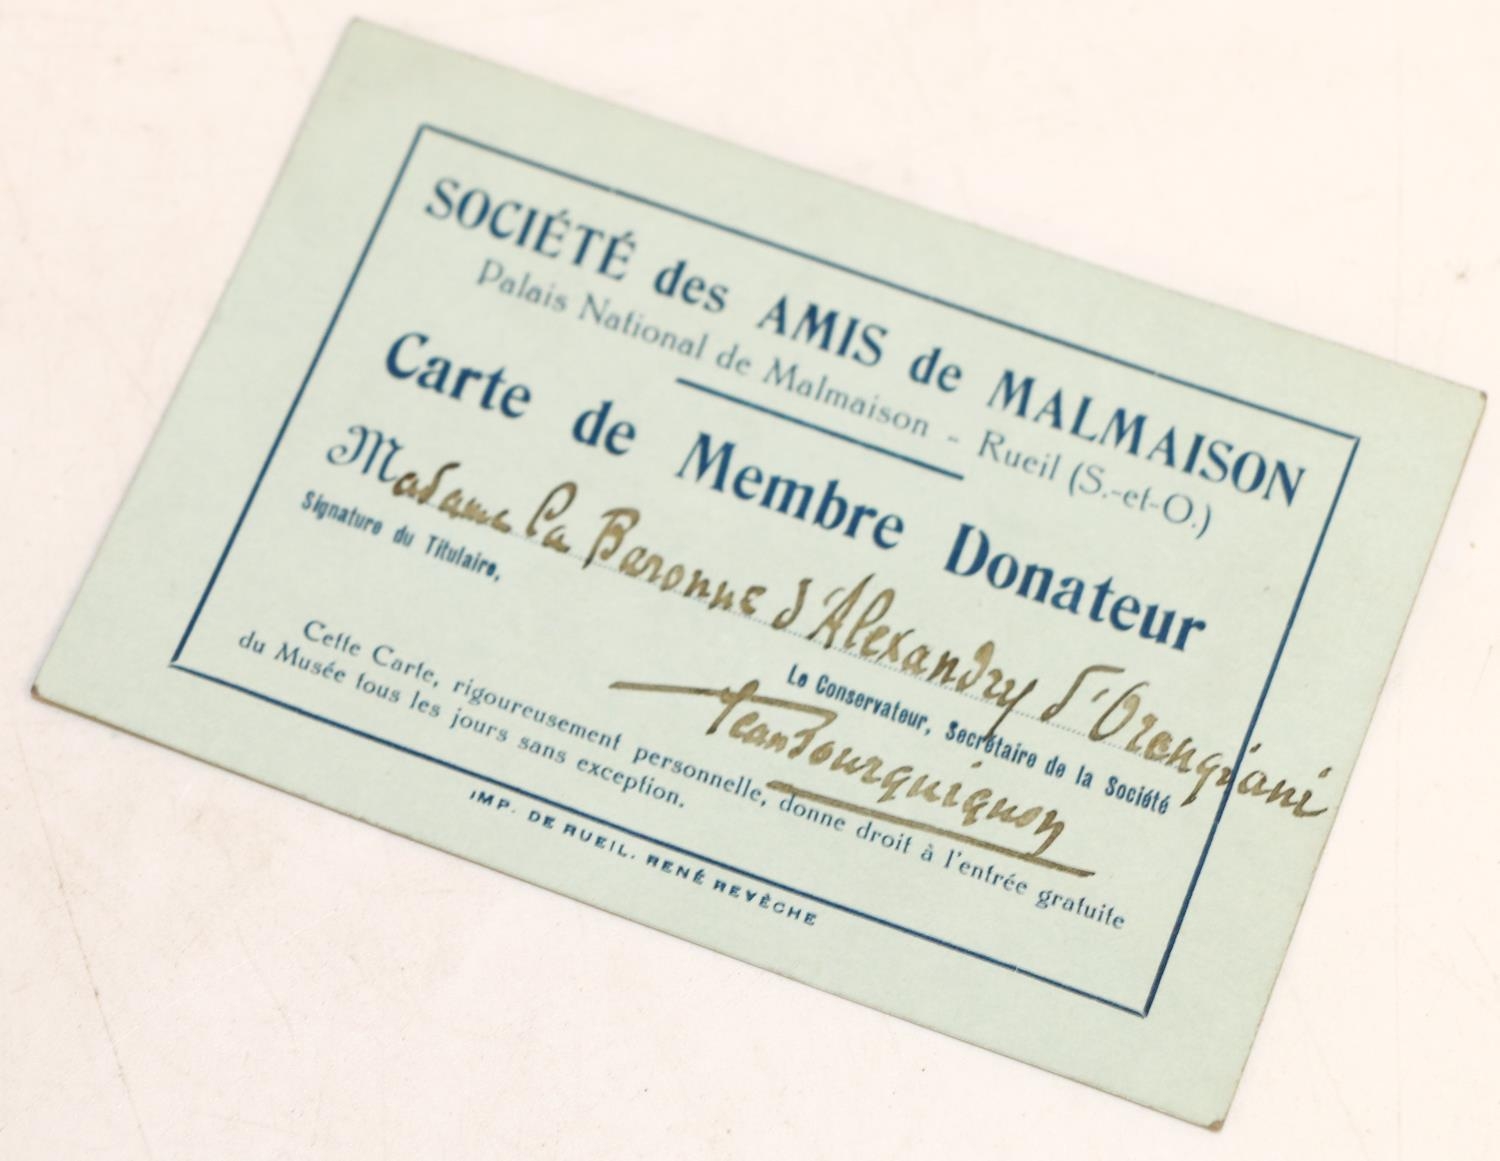 PT Barnum: Société des Amis de Malmaison membership card, issued in the name of Madame La Baronne